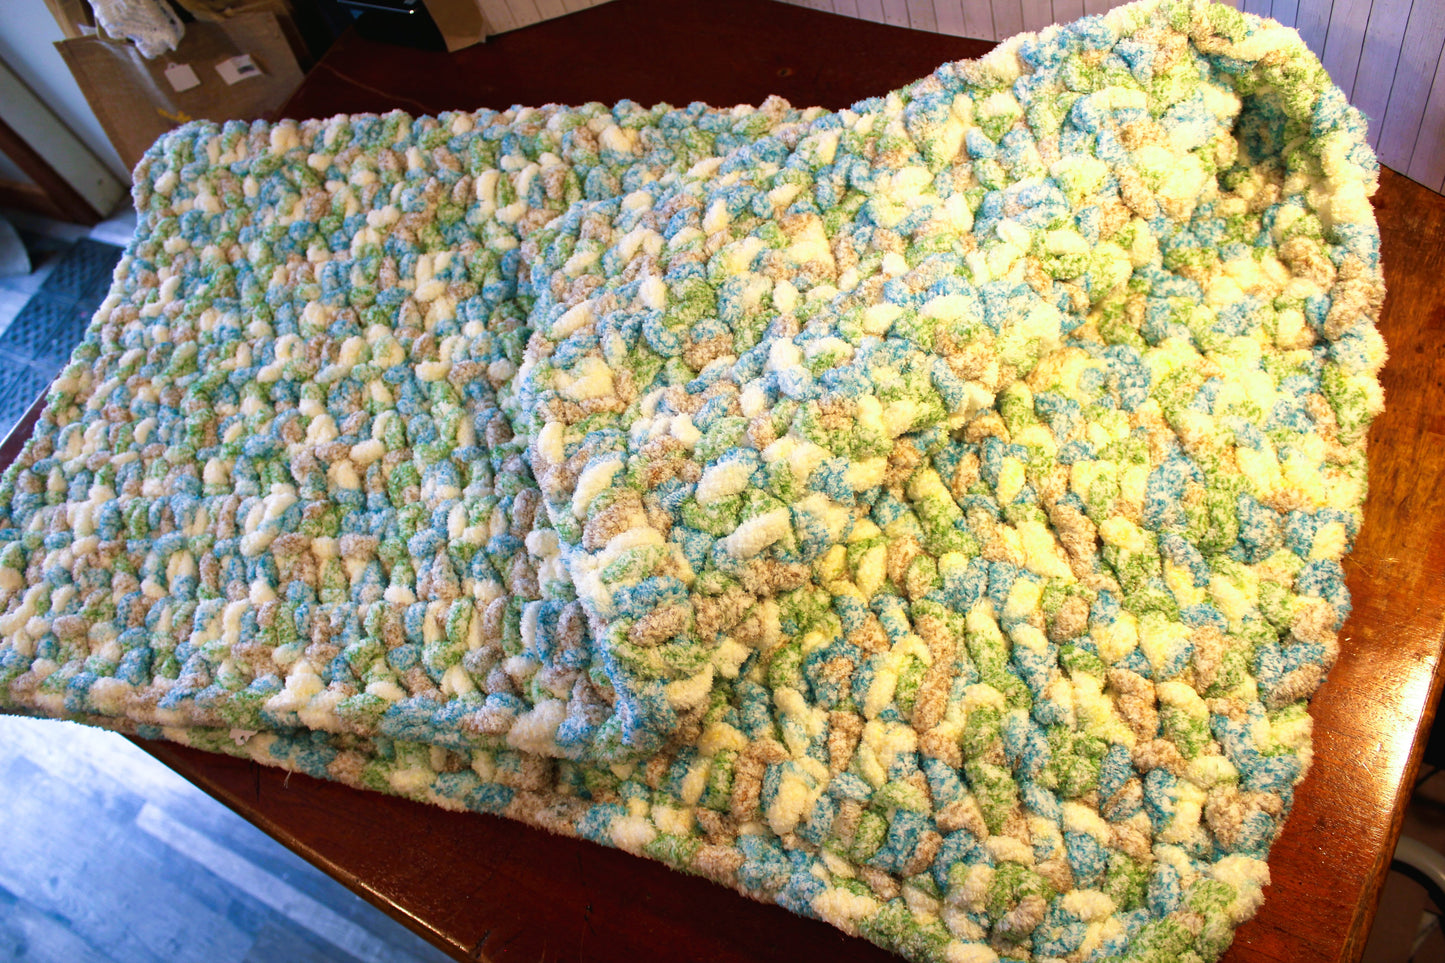 Crochet Blanket